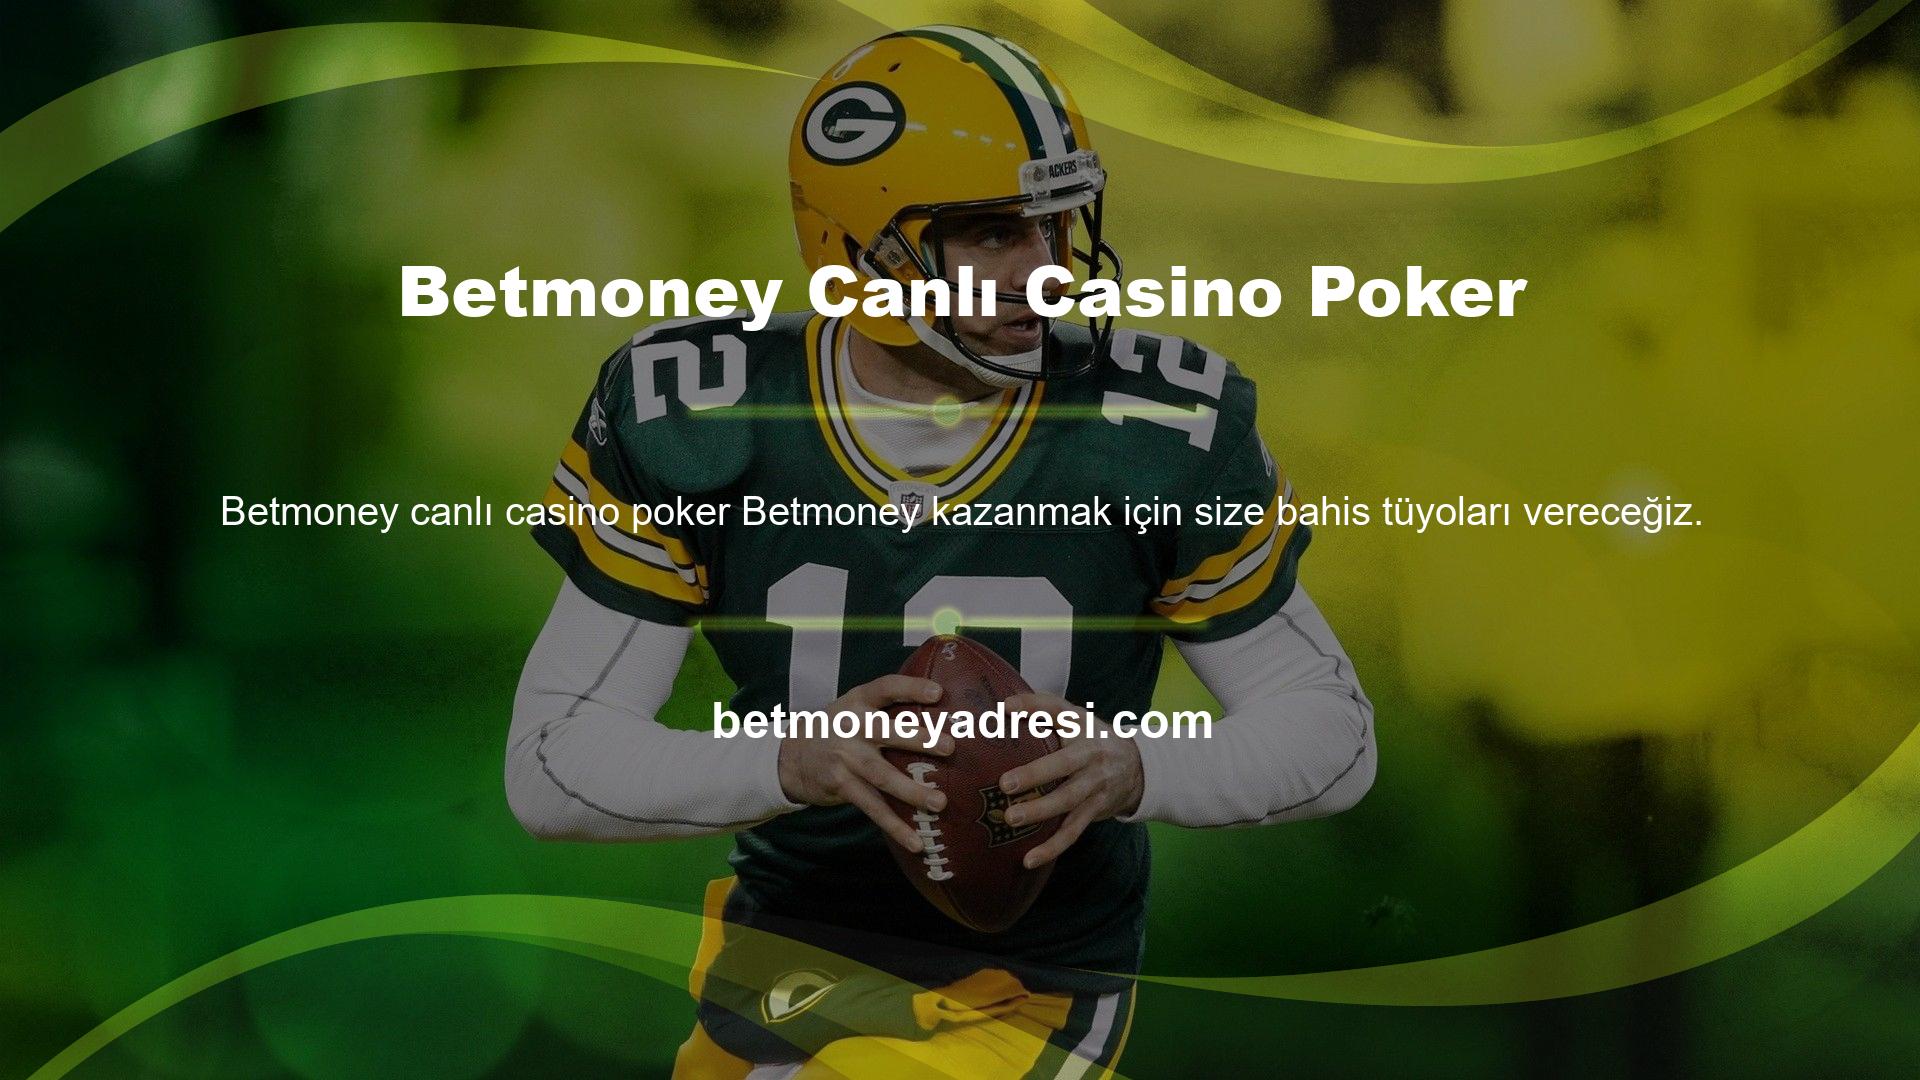 Betmoney Canlı Casino Poker